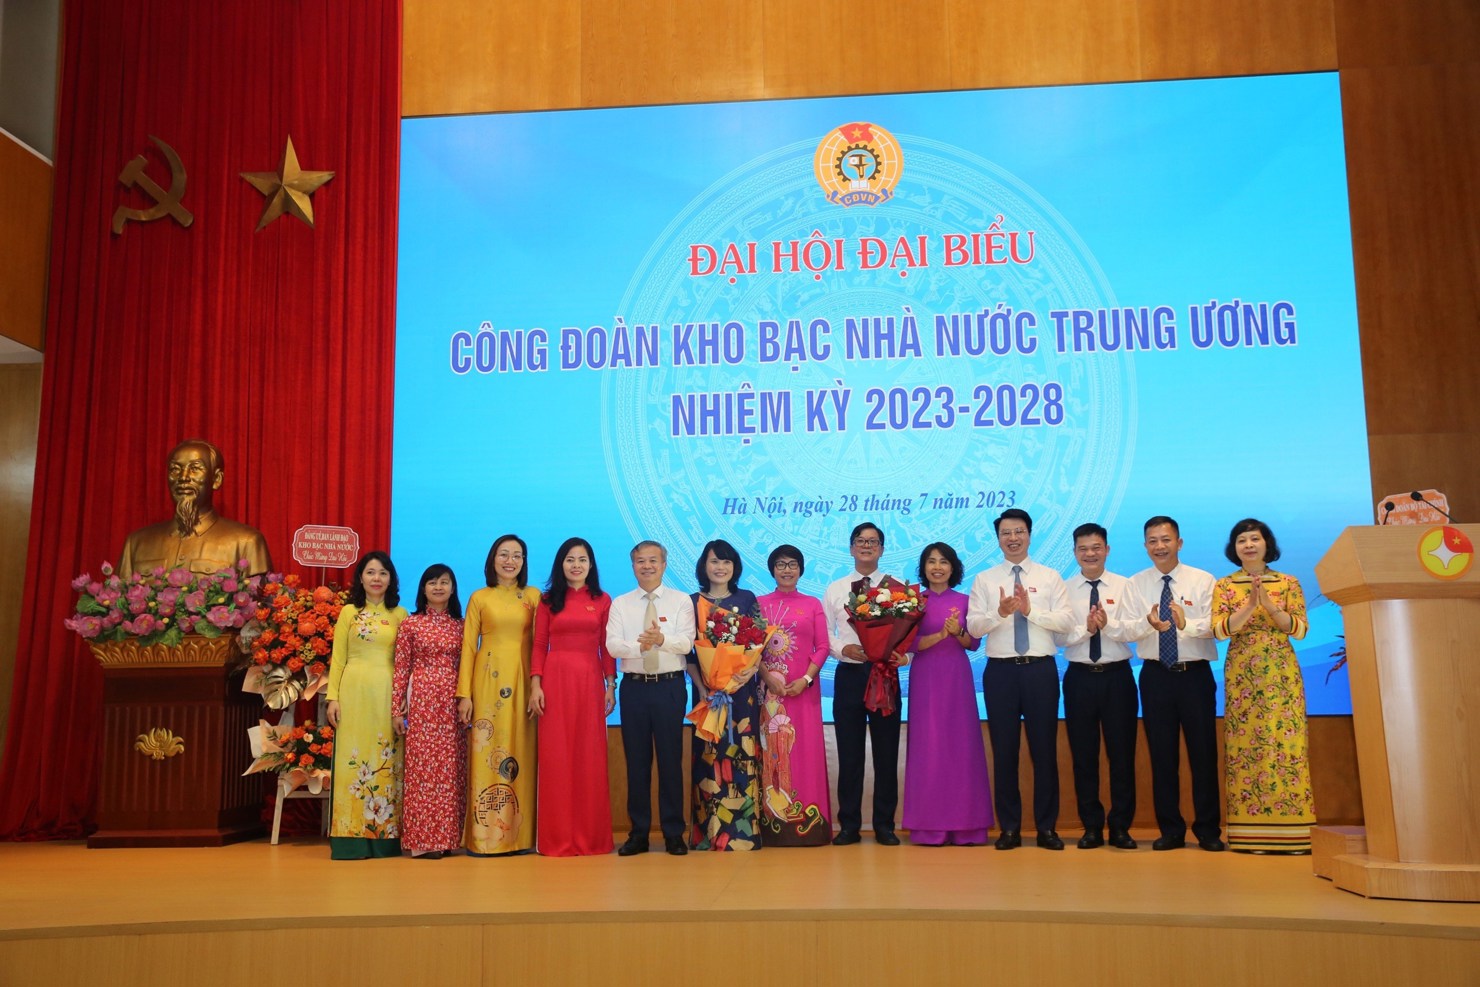 Ông Trần Quân - Tổng giám đốc KBNN Trung ương tặng hoa chúc mừng Ban Chấp hành KBNN Trung ương nhiệm kỳ 2023-2028